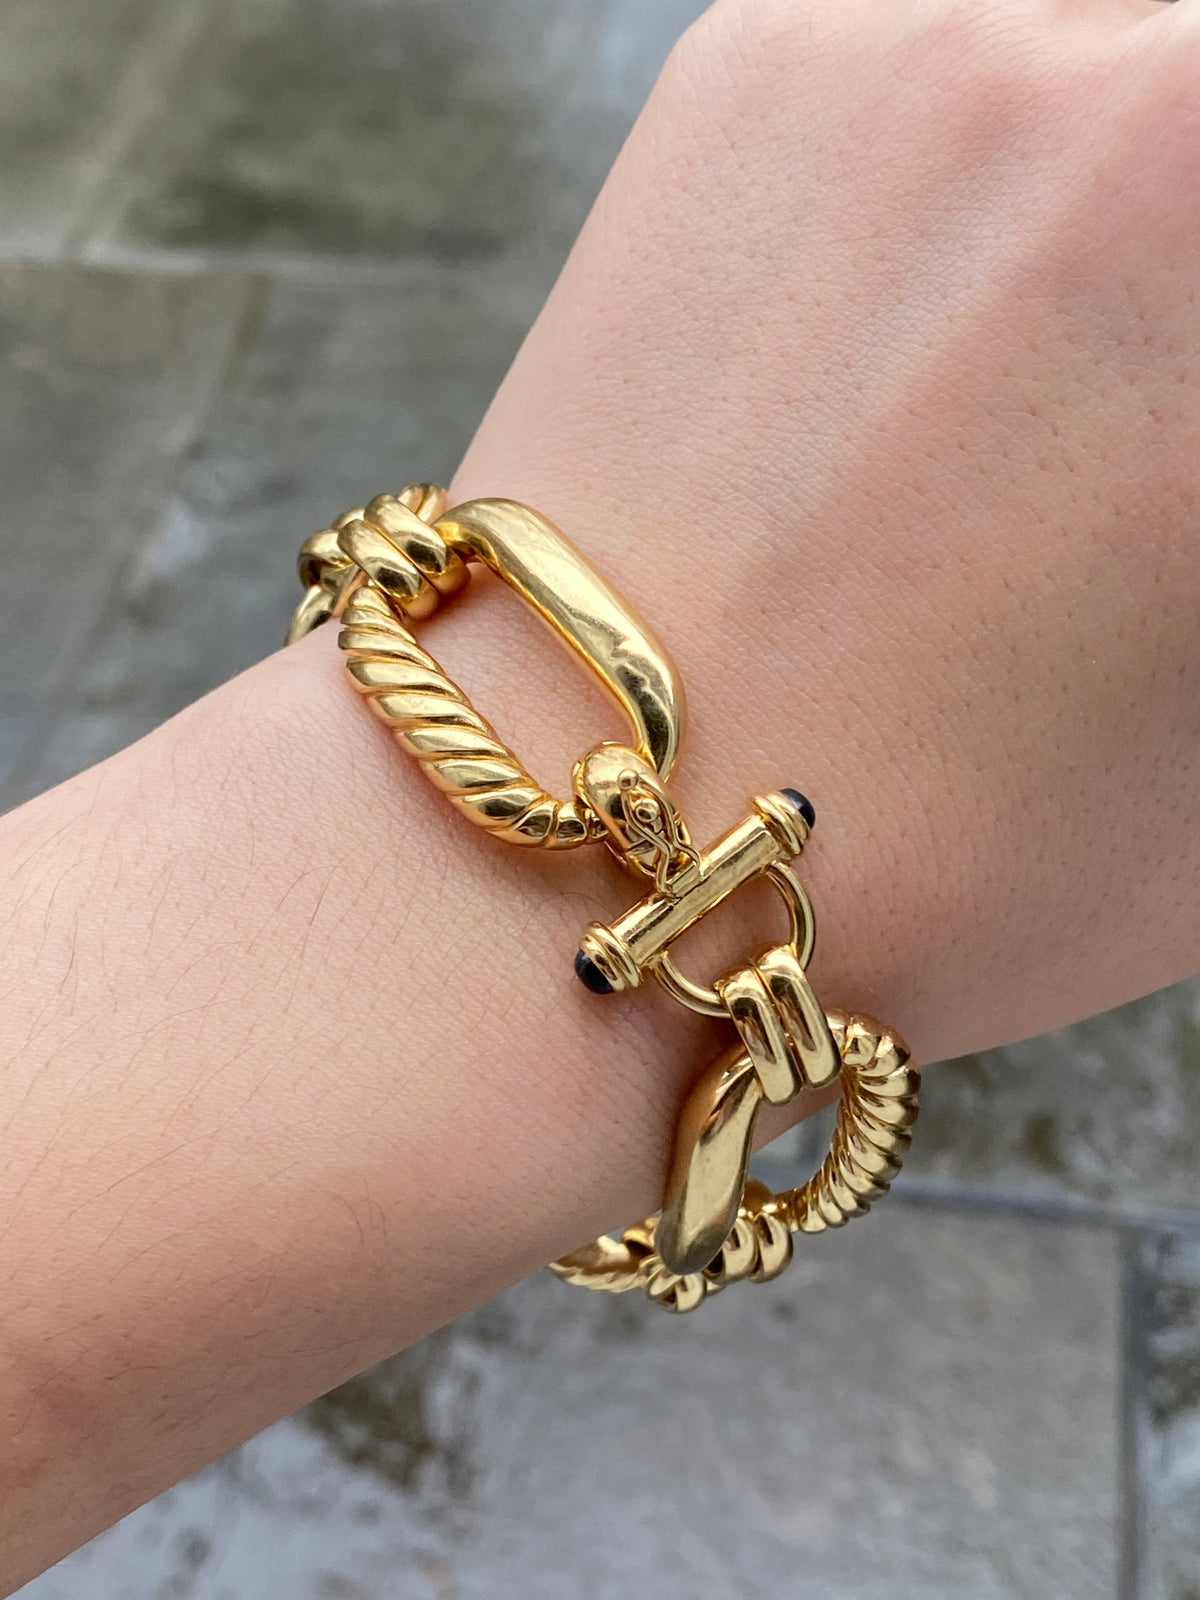 Shop 18K Gold Charm Bracelet Online in India